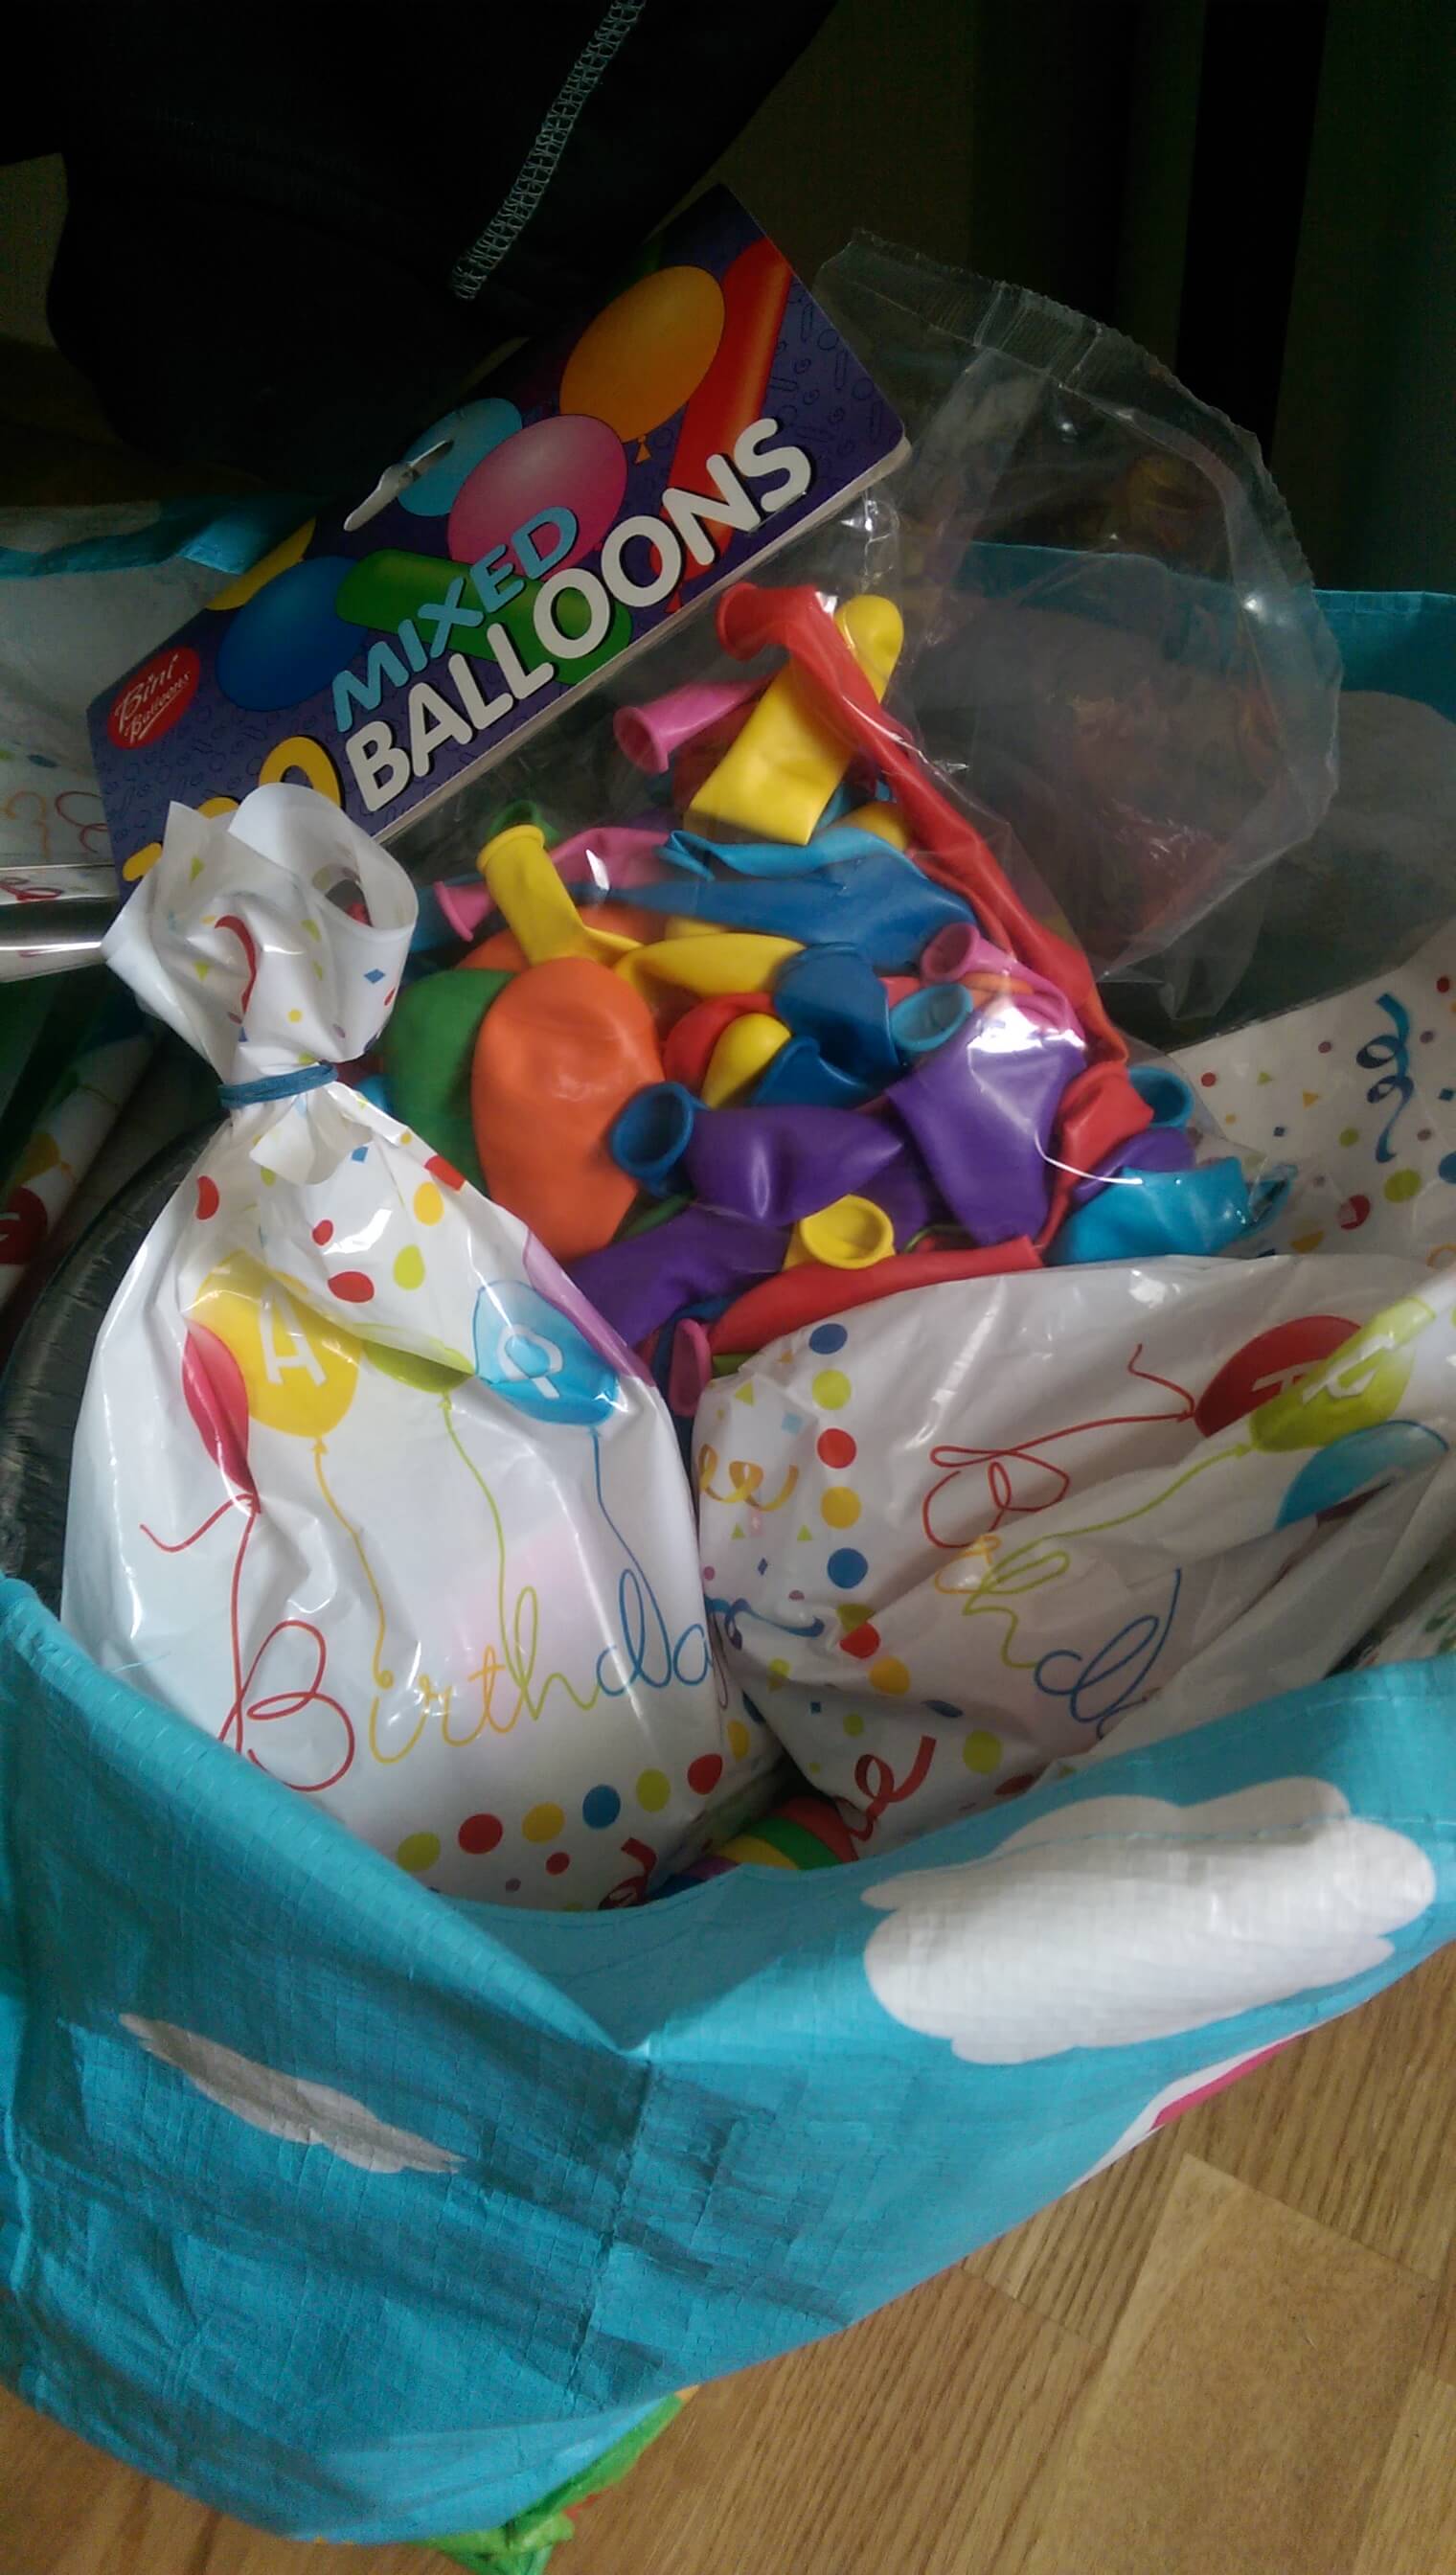 Godteriposer og ballonger på plass-i dag blir det bursdagsfest